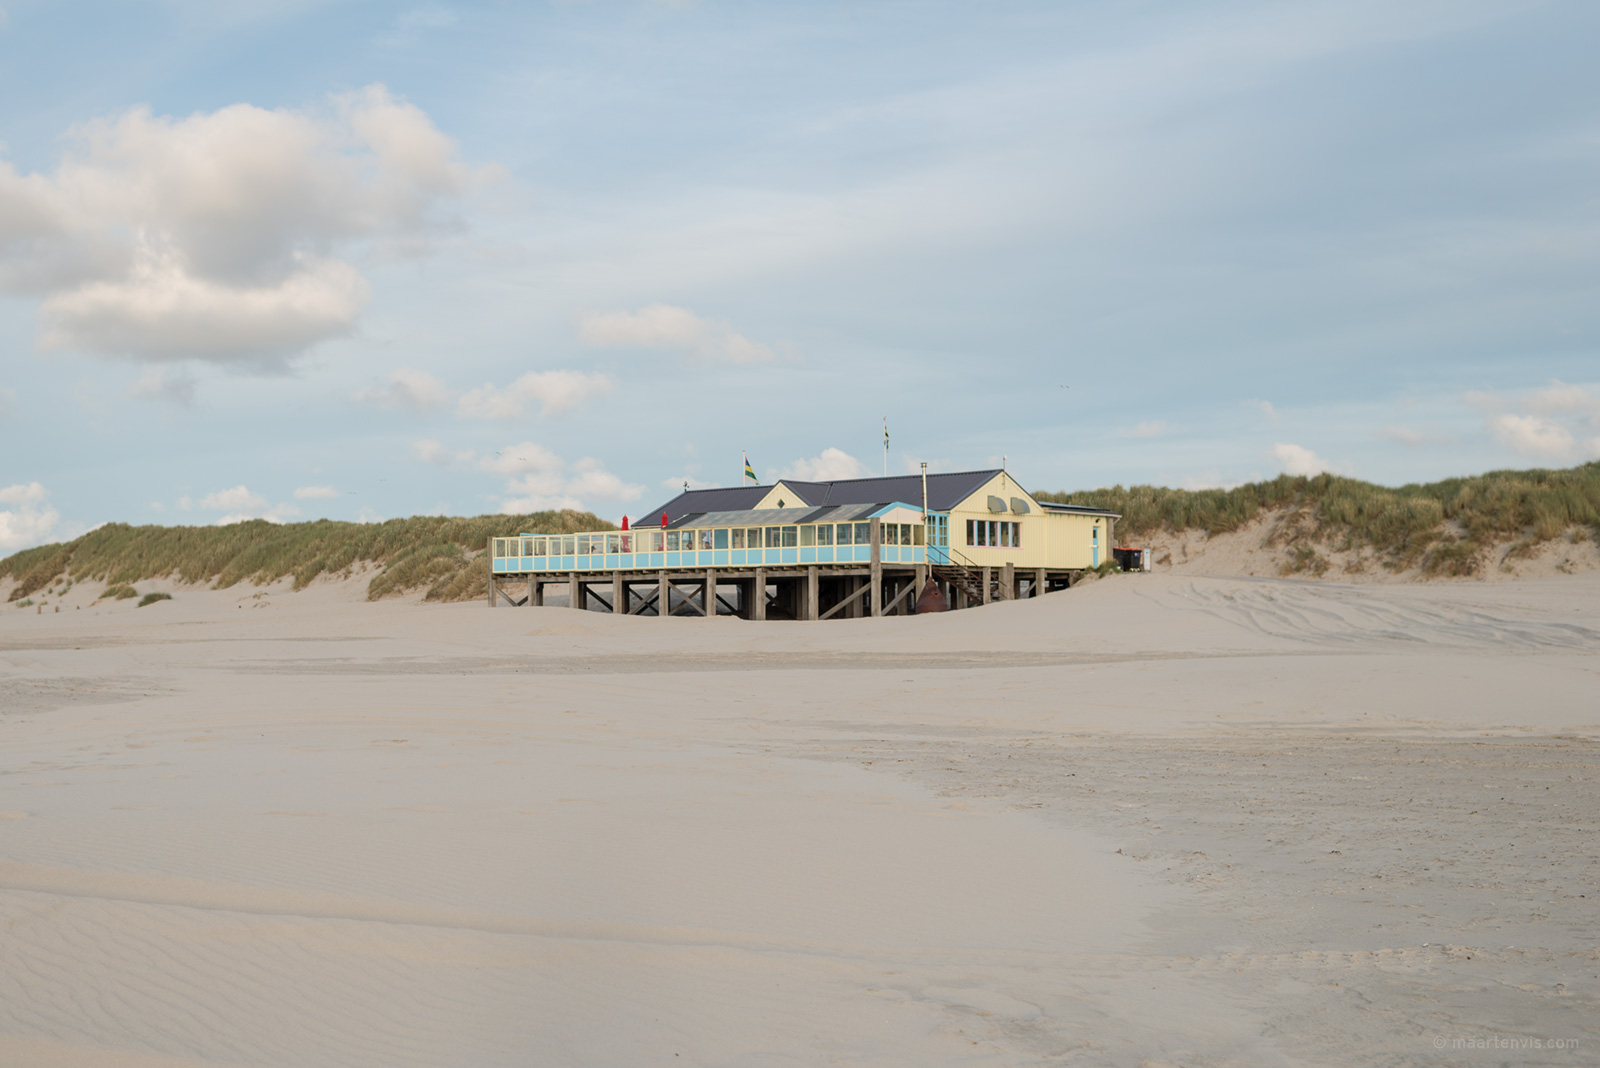 Ongebruikt Heartbreak Hotel Terschelling is a great 50's themed beach restaurant QW-63